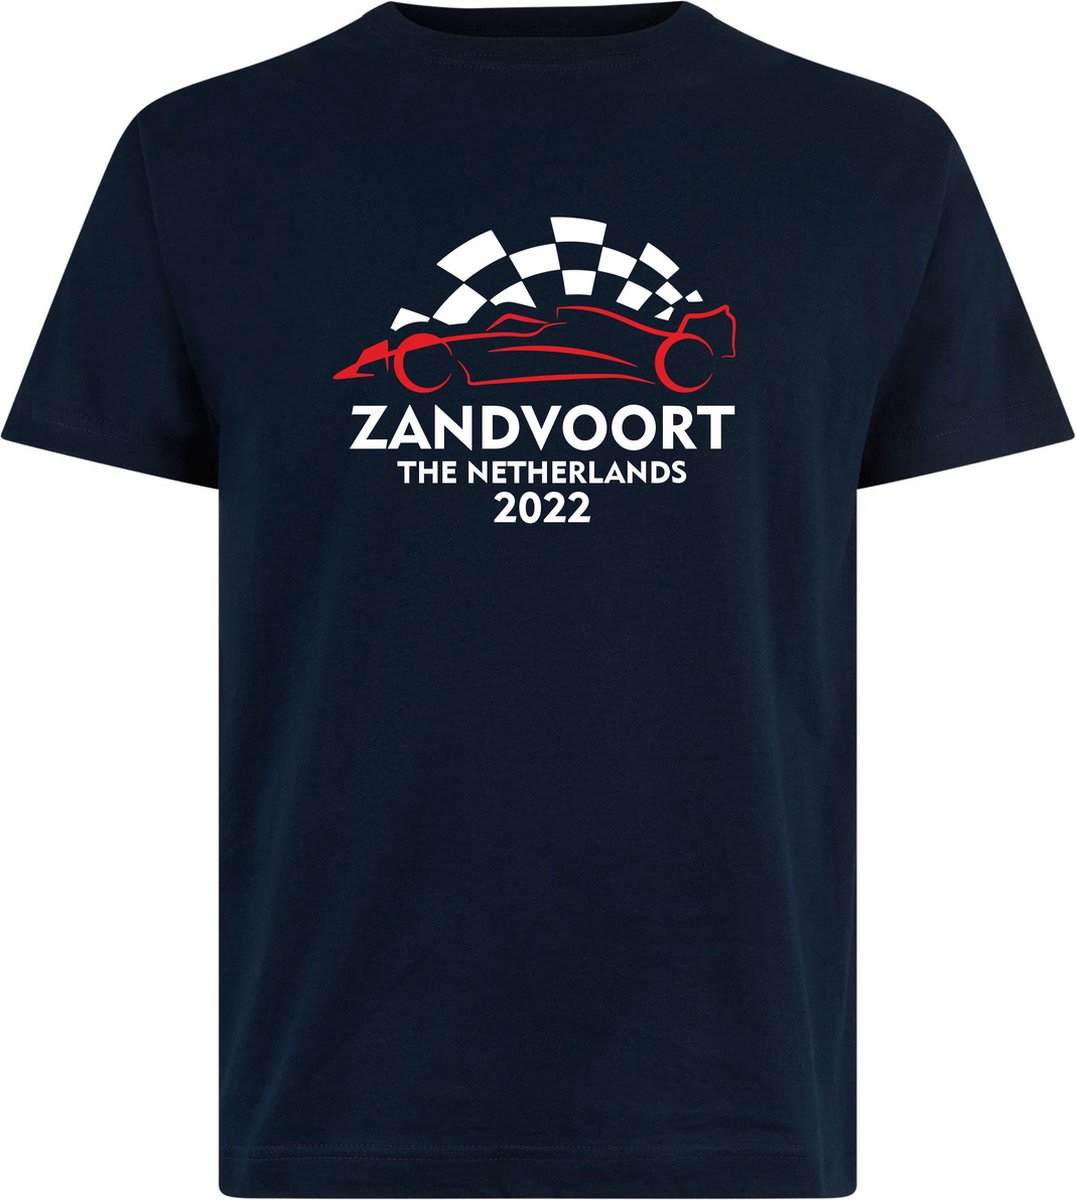 T-shirt Zandvoort 2022 met raceauto | Max Verstappen / Red Bull Racing / Formule 1 fan | Grand Prix Circuit Zandvoort | kleding shirt | Navy | maat 3XL